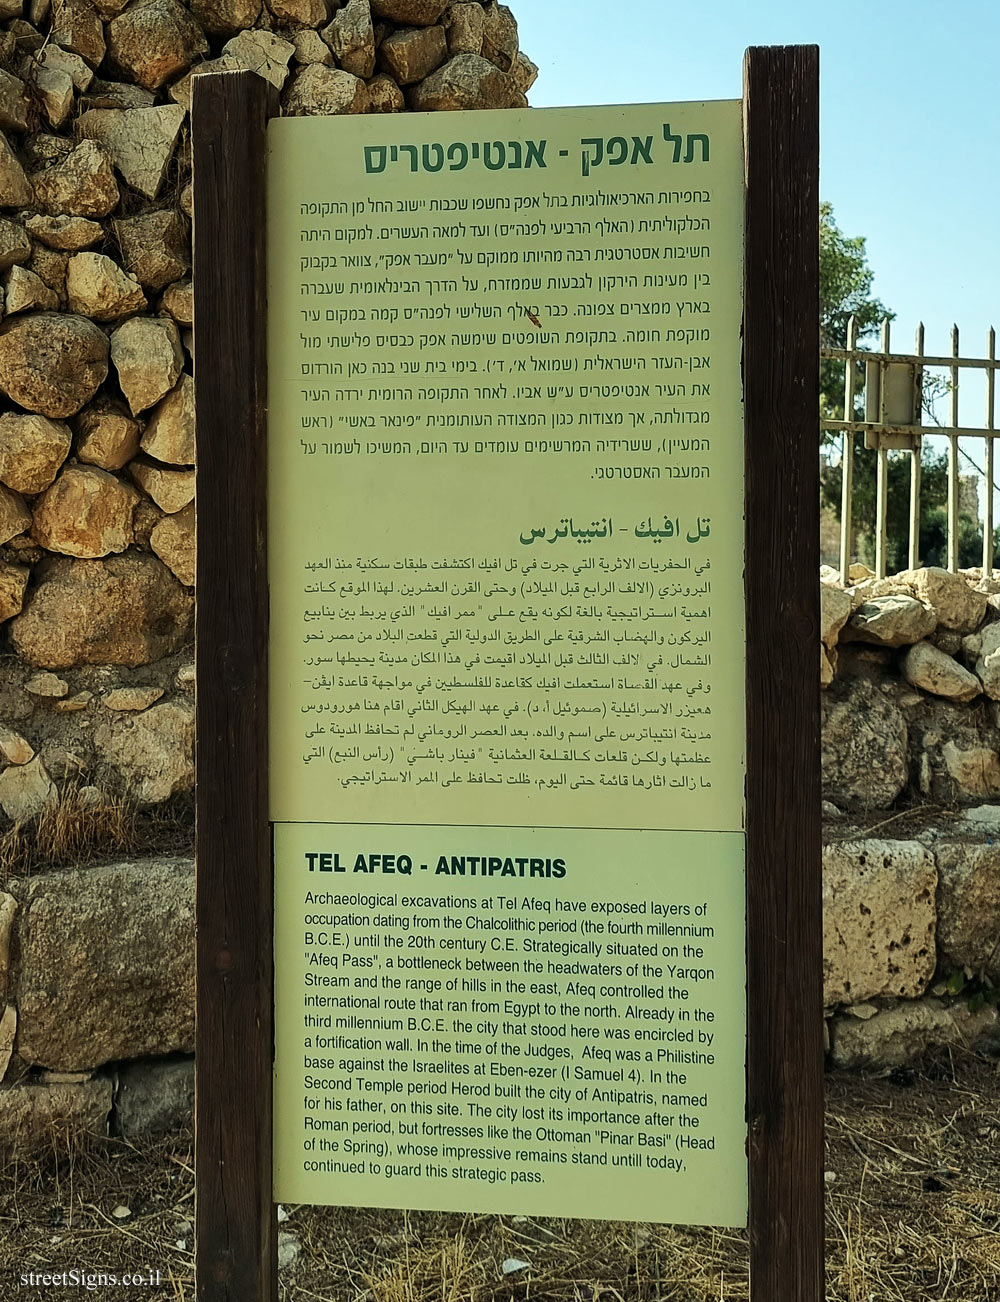 Tel Afeq - Antipatris